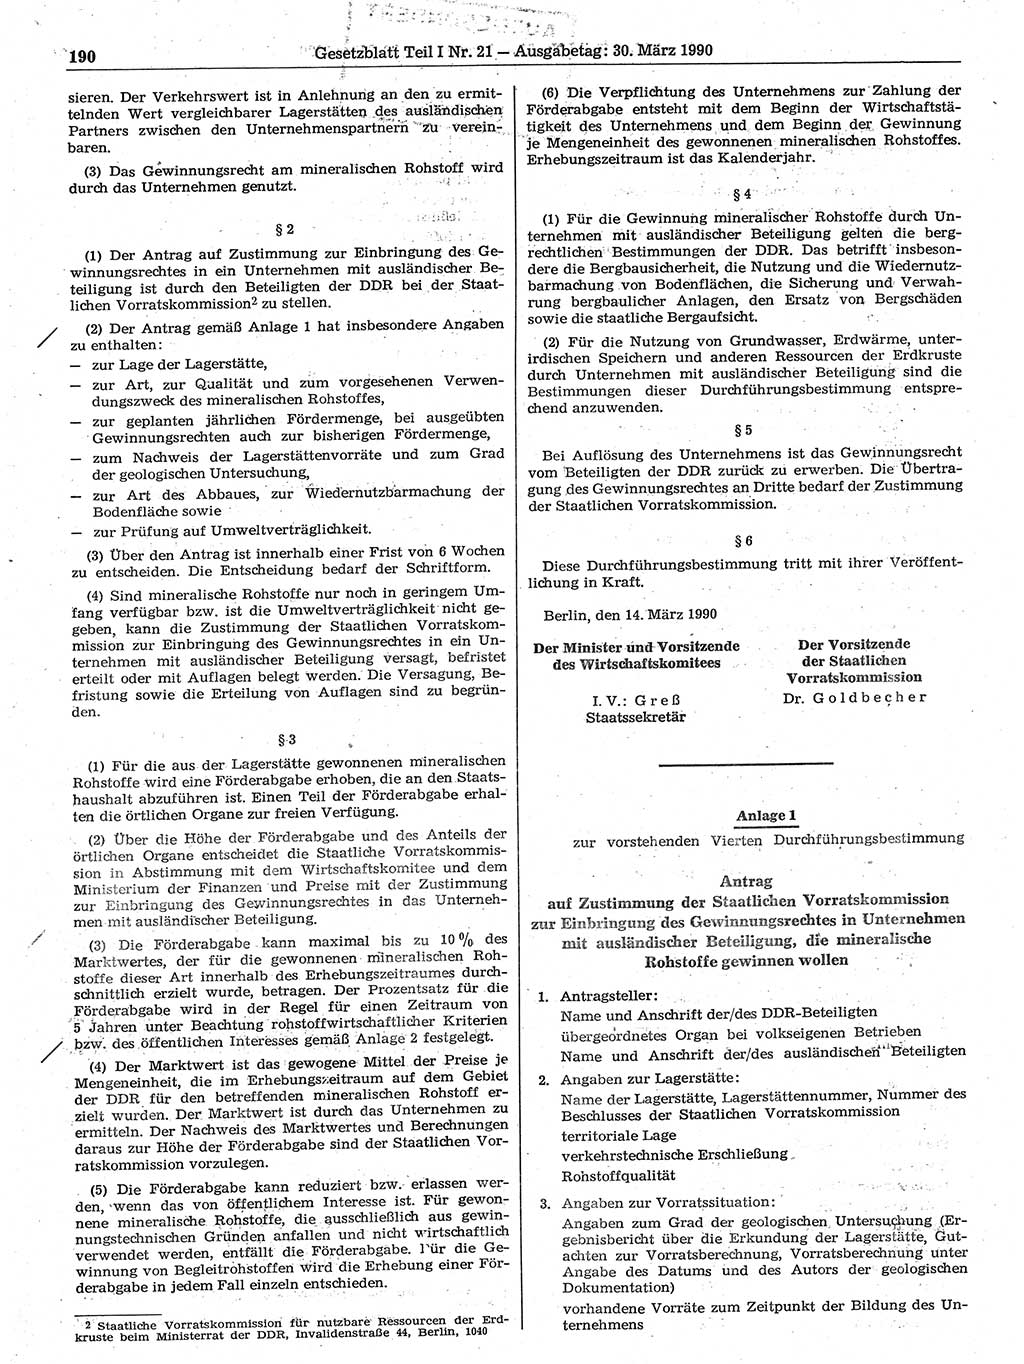 Gesetzblatt (GBl.) der Deutschen Demokratischen Republik (DDR) Teil Ⅰ 1990, Seite 190 (GBl. DDR Ⅰ 1990, S. 190)